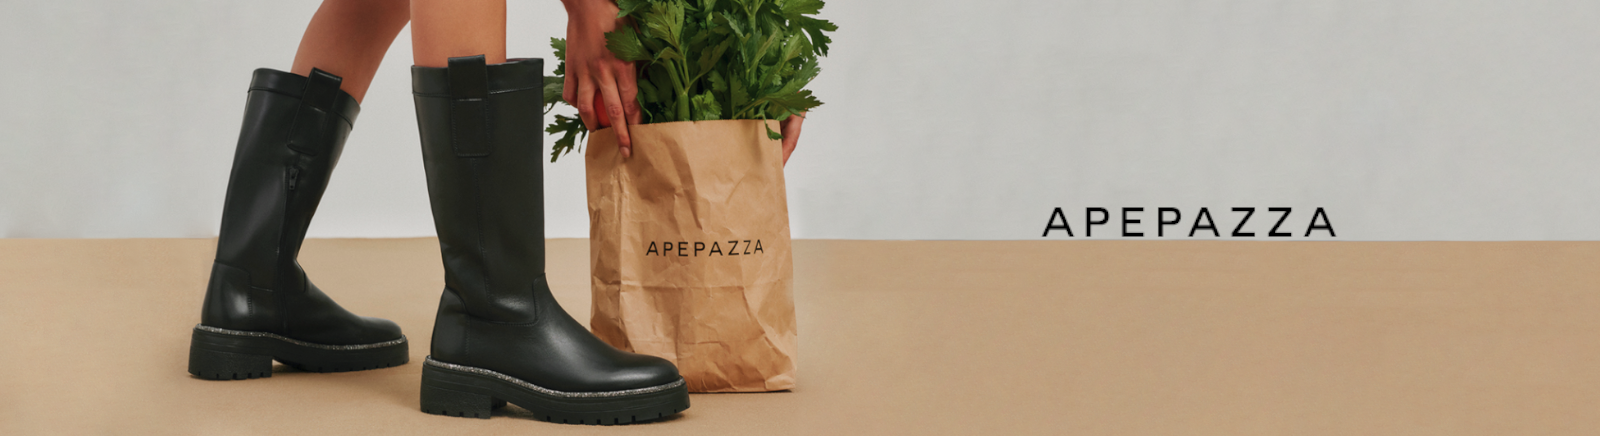 Apepazza Boots für Damen im Online-Shop von GISY kaufen